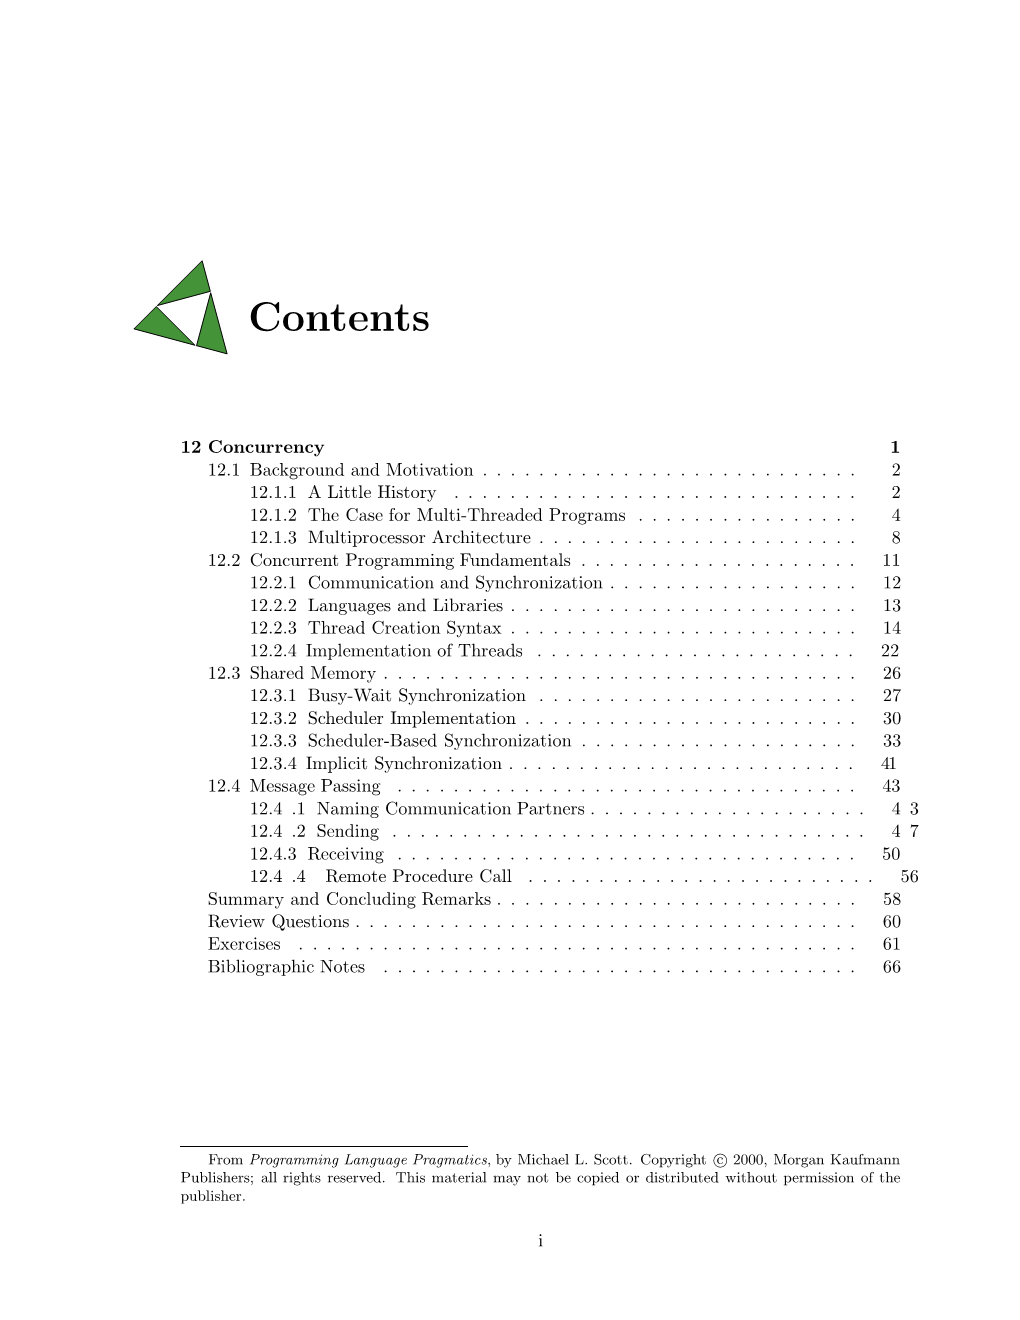 Chapter 12 (Concurrency) of Programming Language Pragmatics